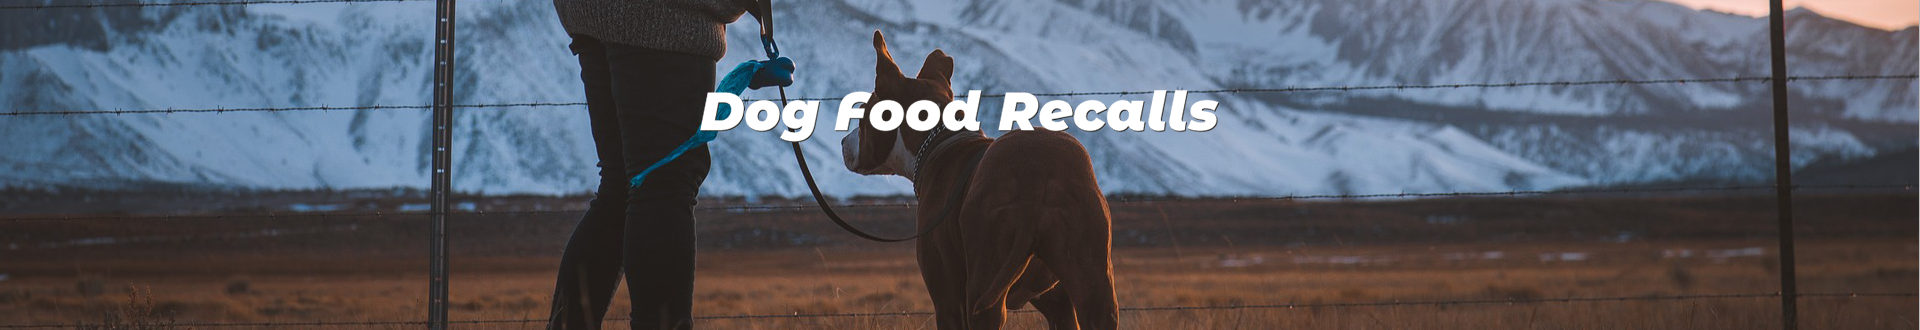 DOG FOOD RECALLS